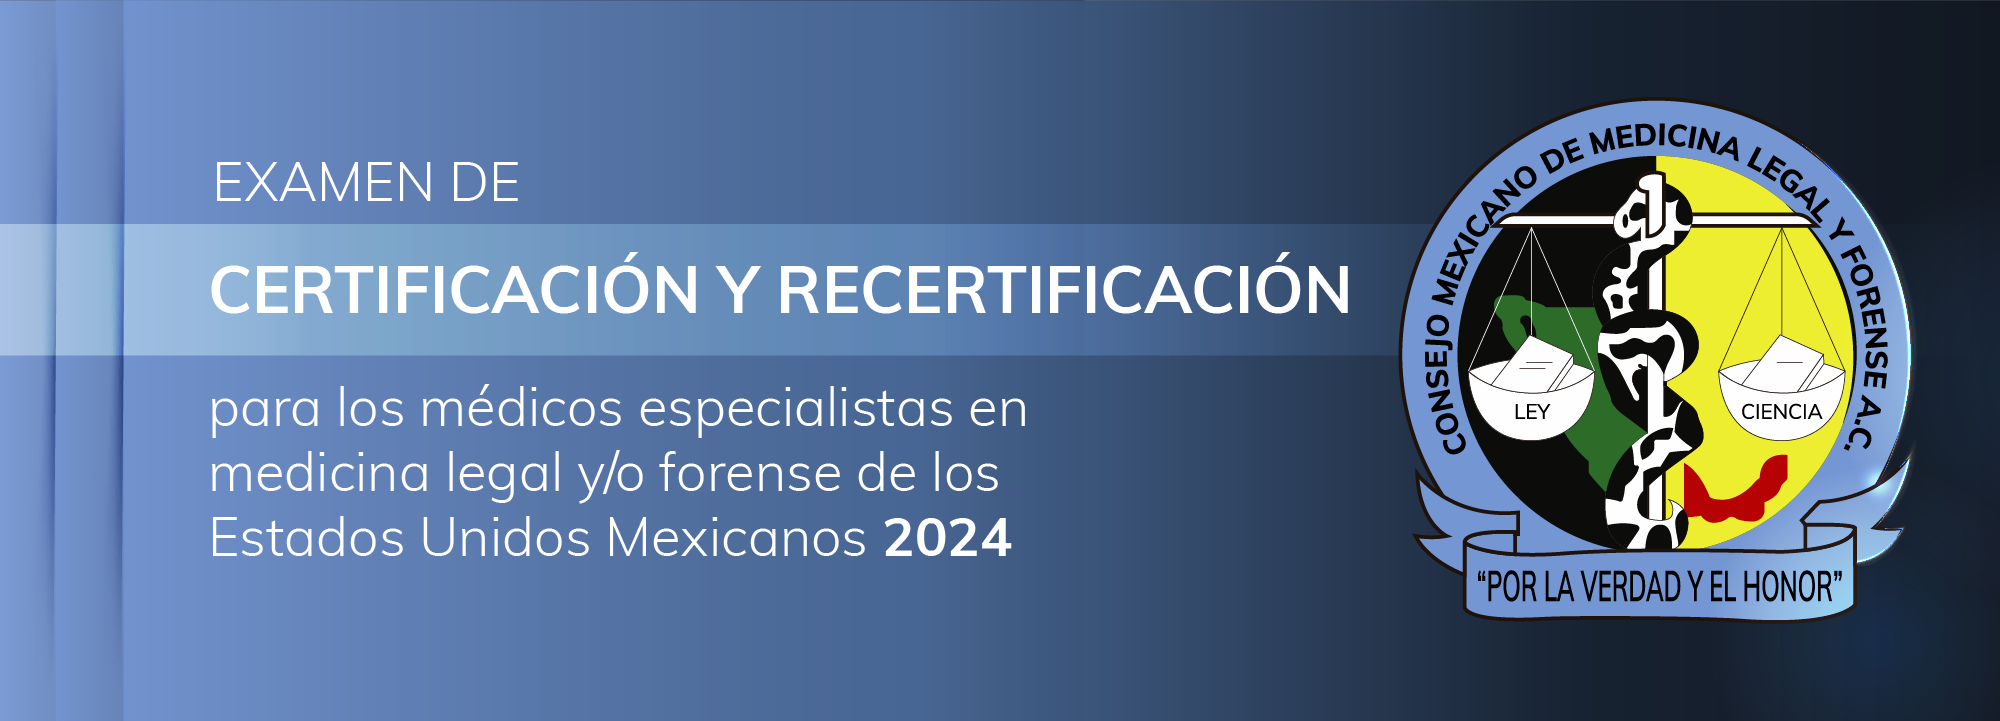 Examen de certificación y recertificación - Abril 2024 Exa-001